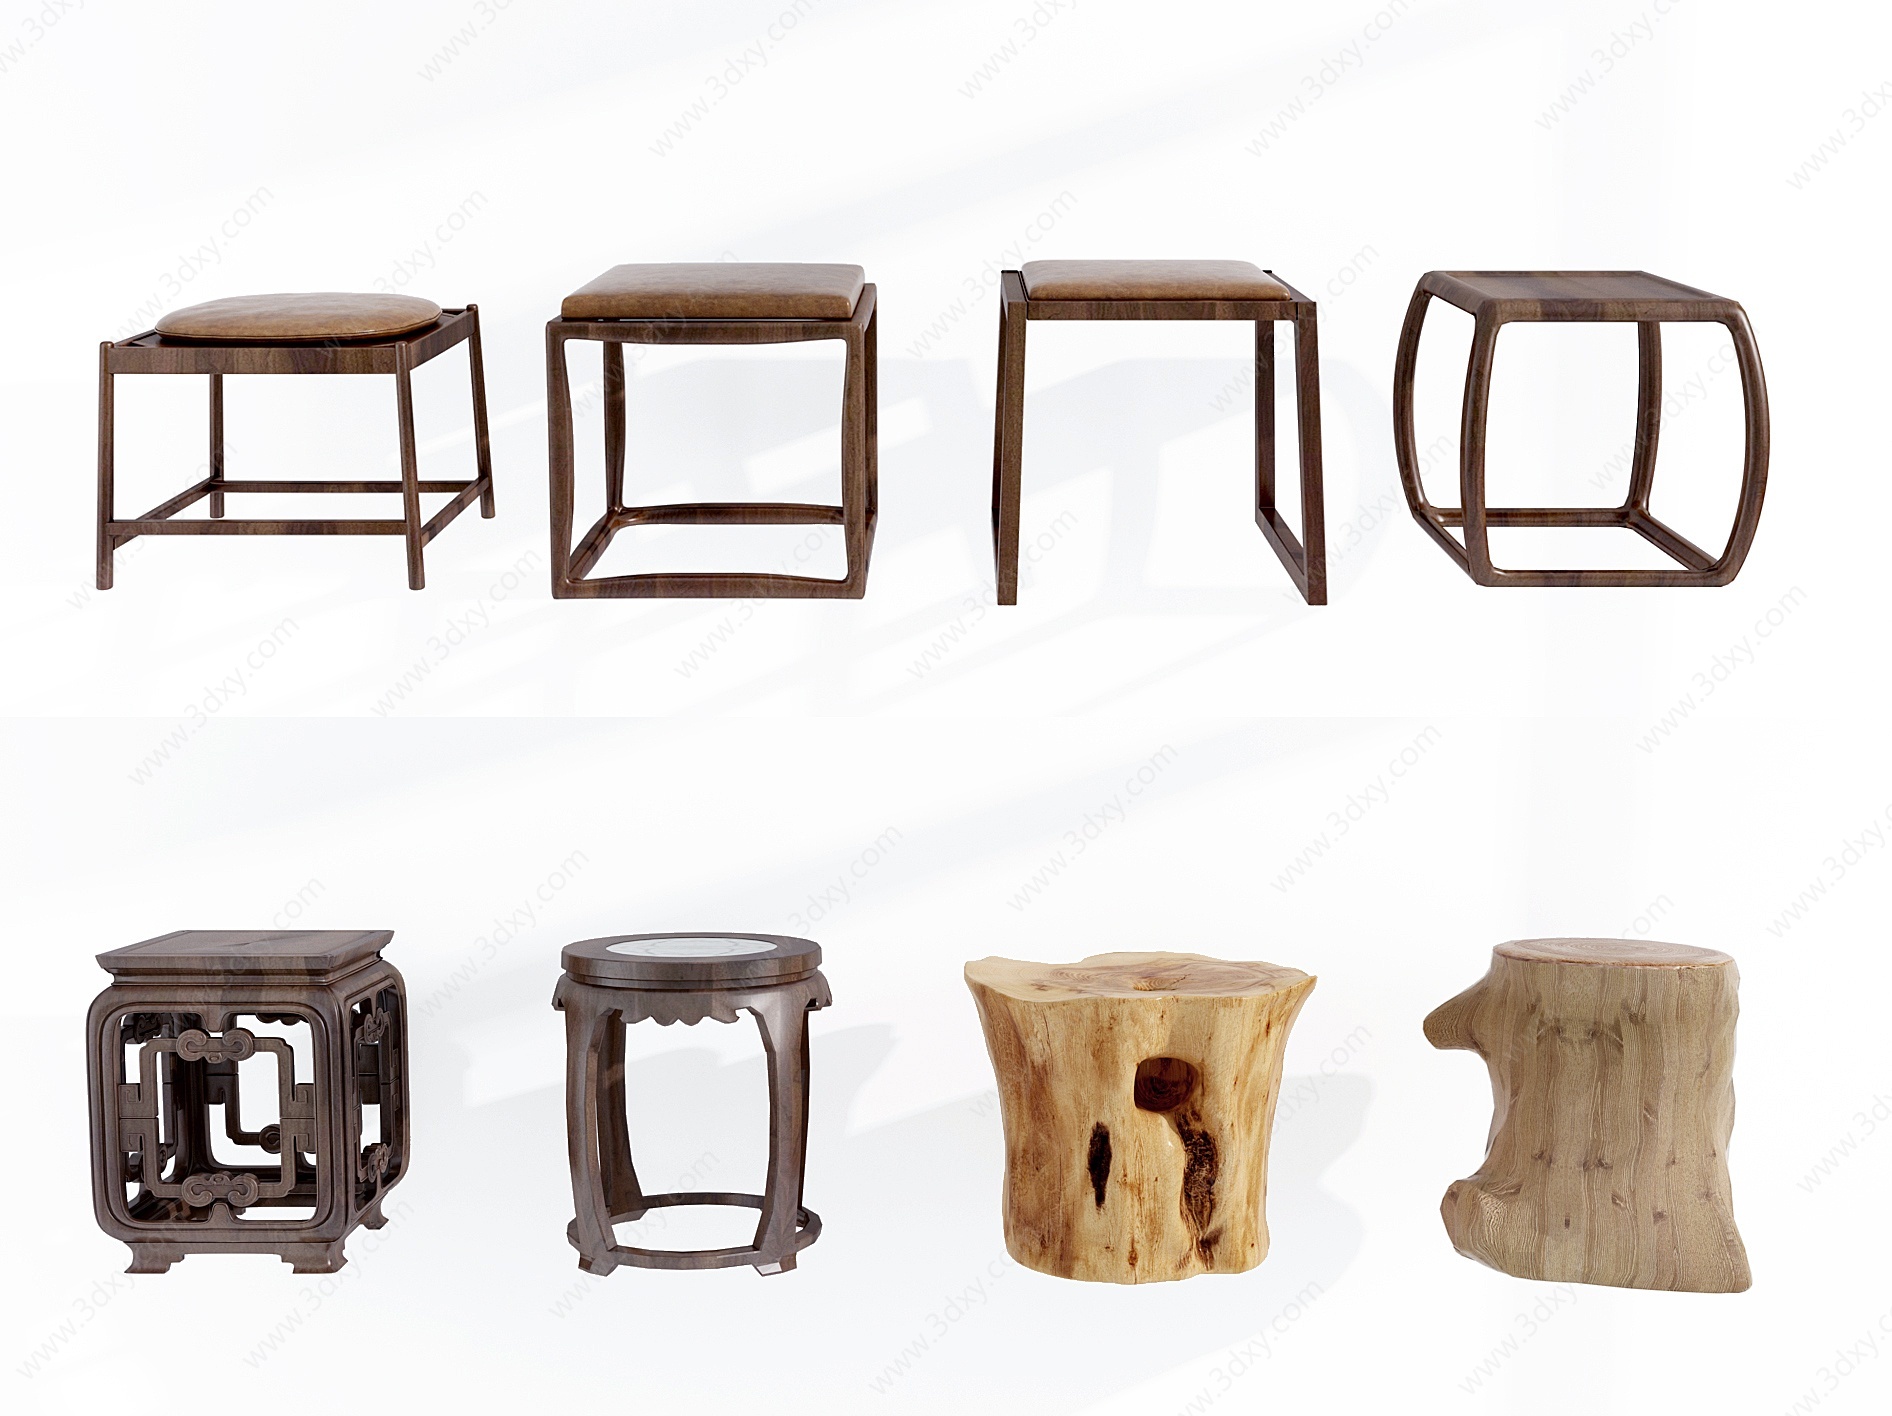 中式实木圆凳矮凳凳子组合3D模型